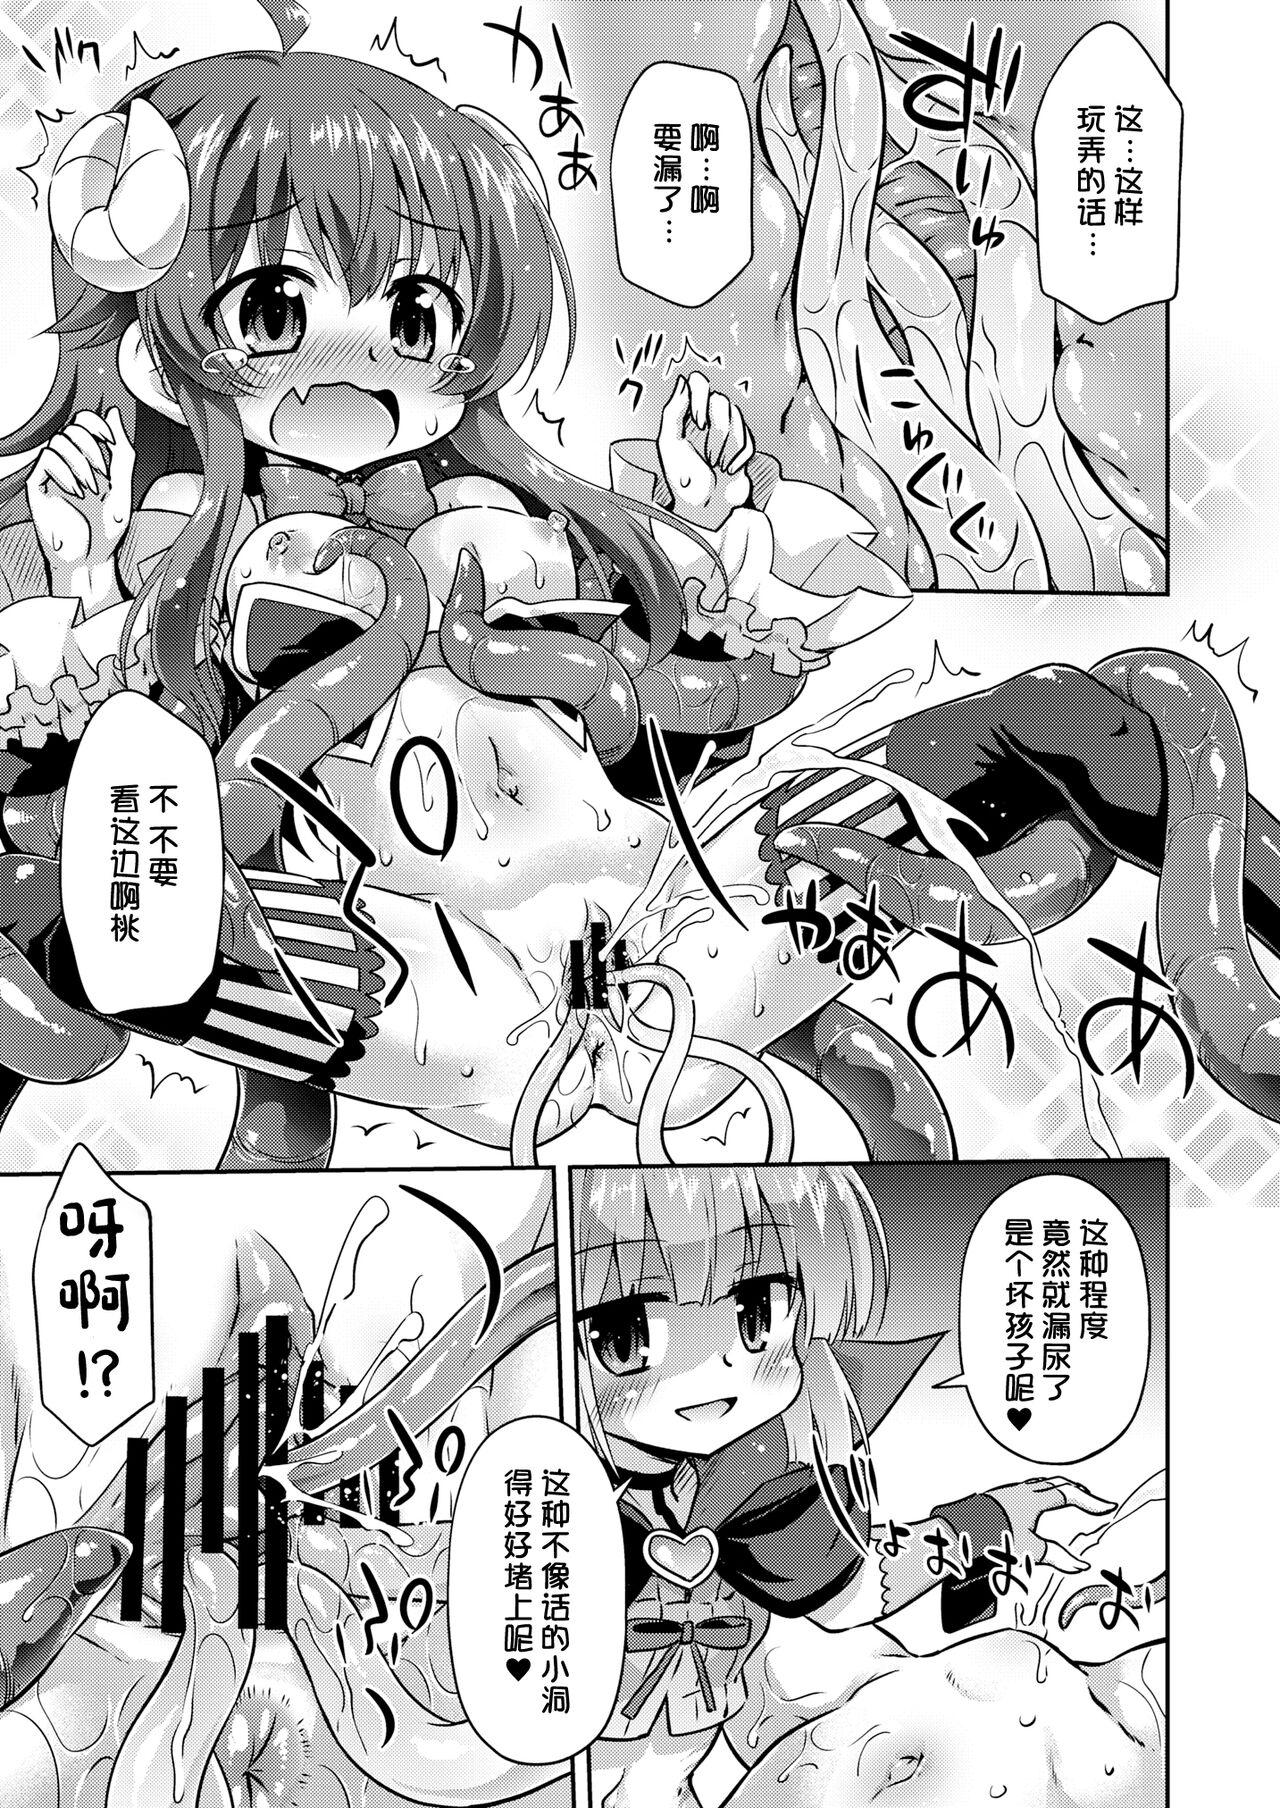 Blowing Anata no Machi no Iyarashi Mazoku - Machikado mazoku | the demon girl next door Curious - Page 11